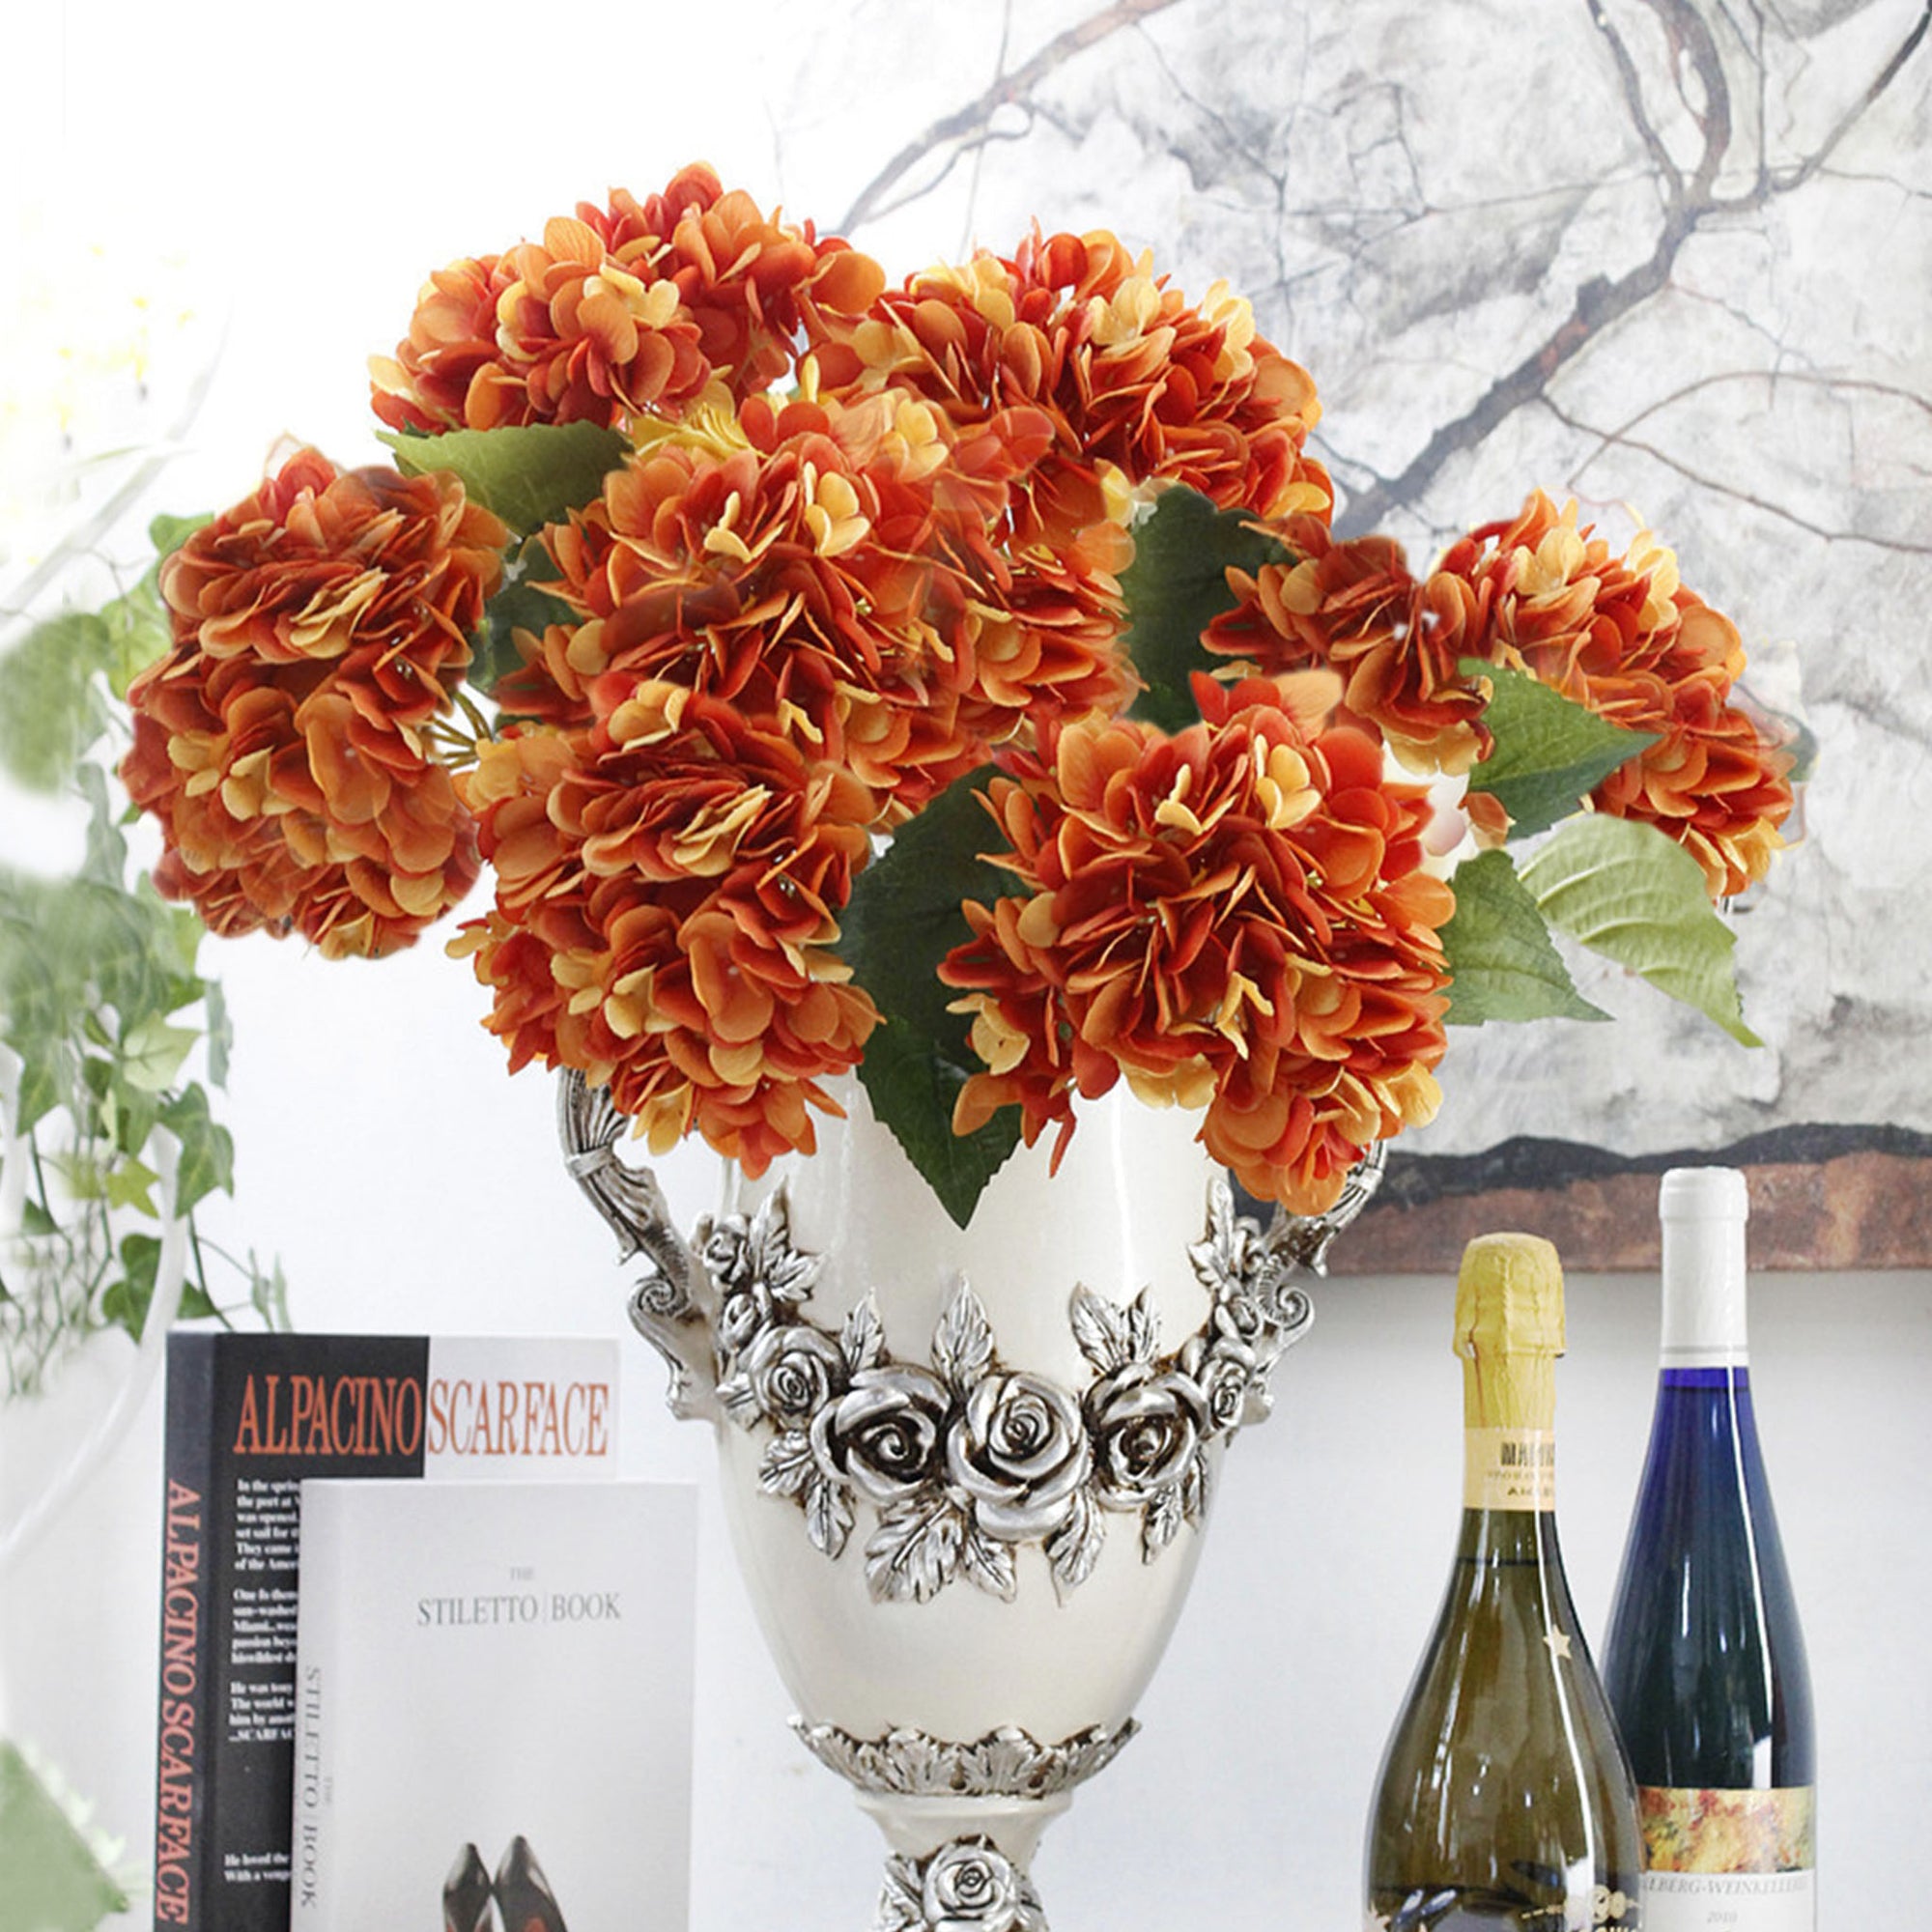 Silk Hydrangea Realist Artificial Hydrange Flowers